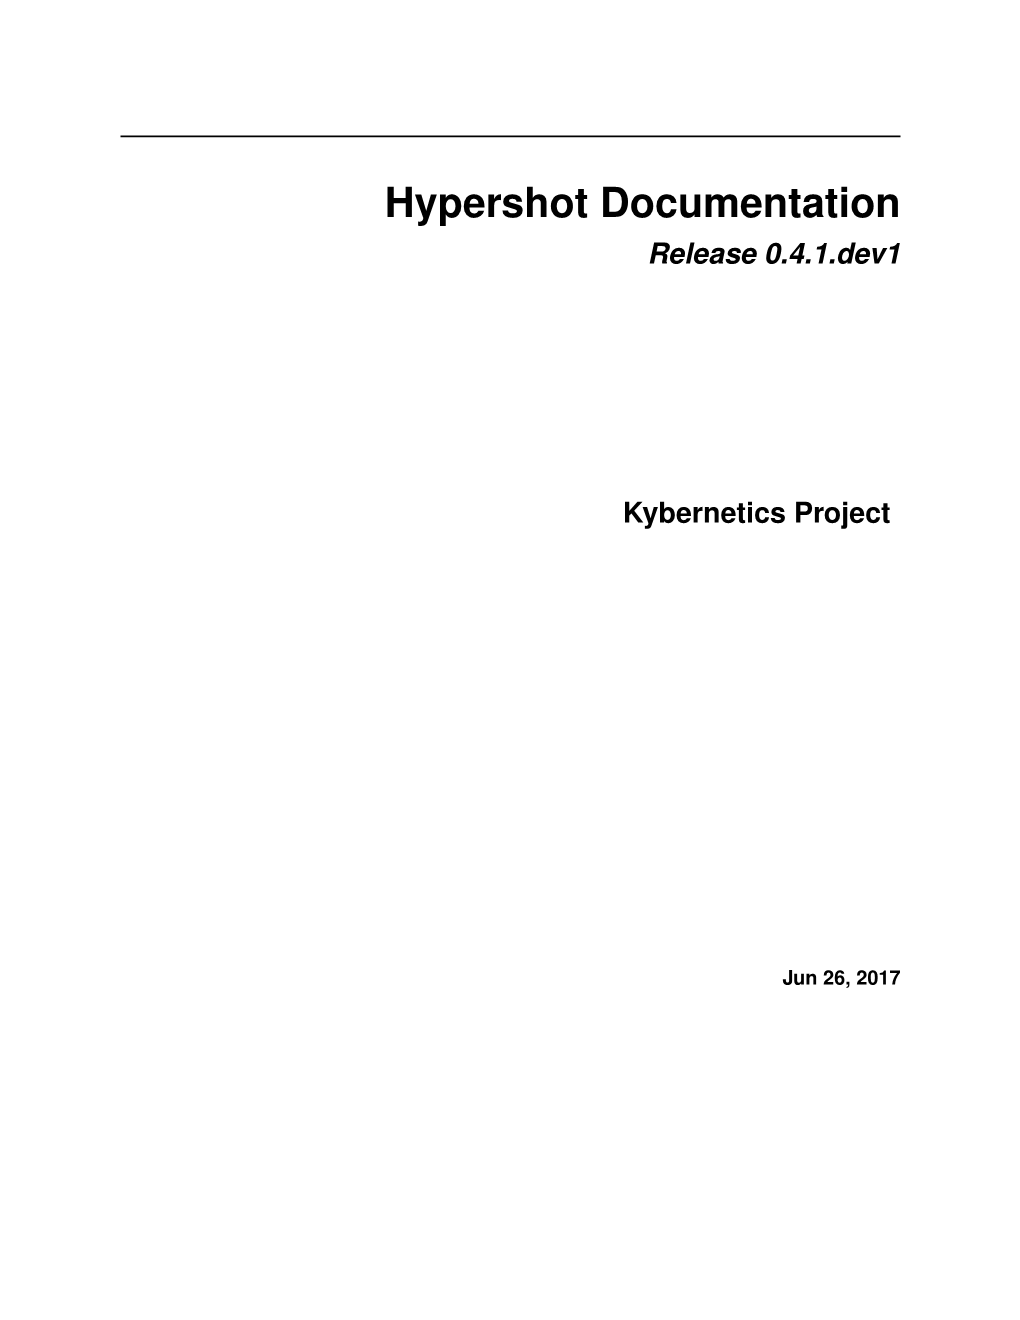 Hypershot Documentation Release 0.4.1.Dev1